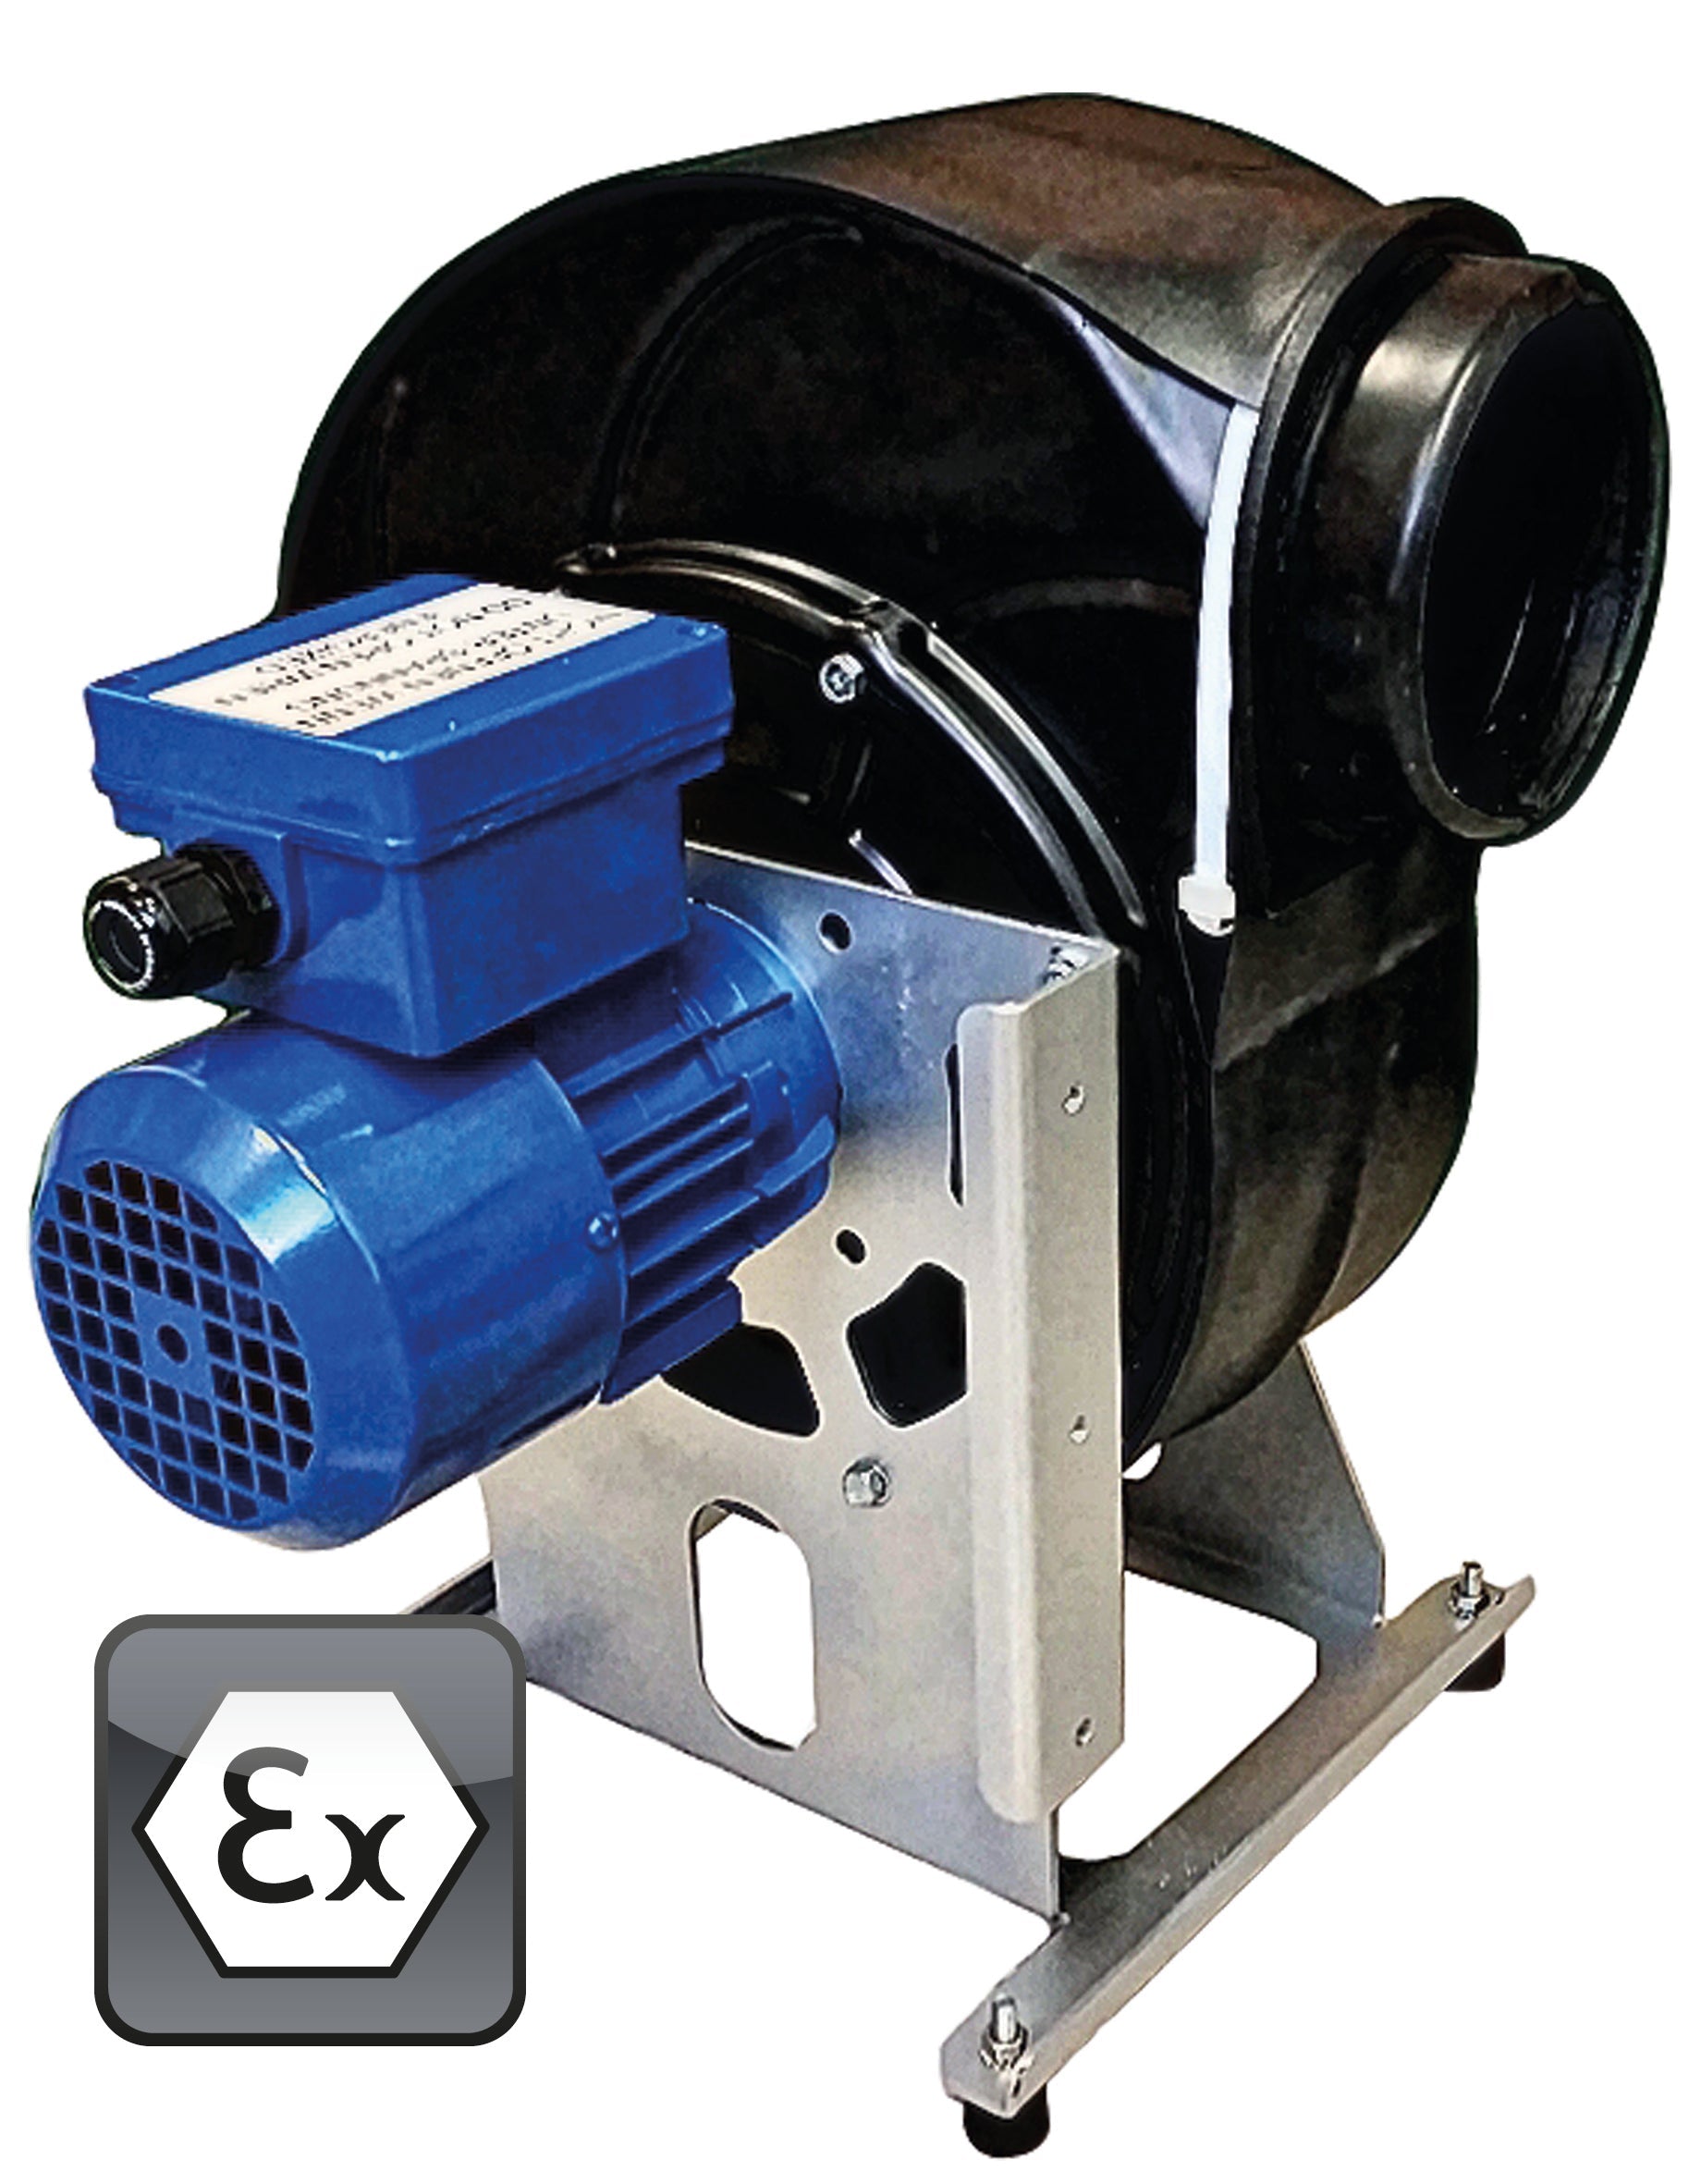 Ventilator Modell EP.VE.29428 für Gefahrstoffarbeitsplätze, Polypropylen